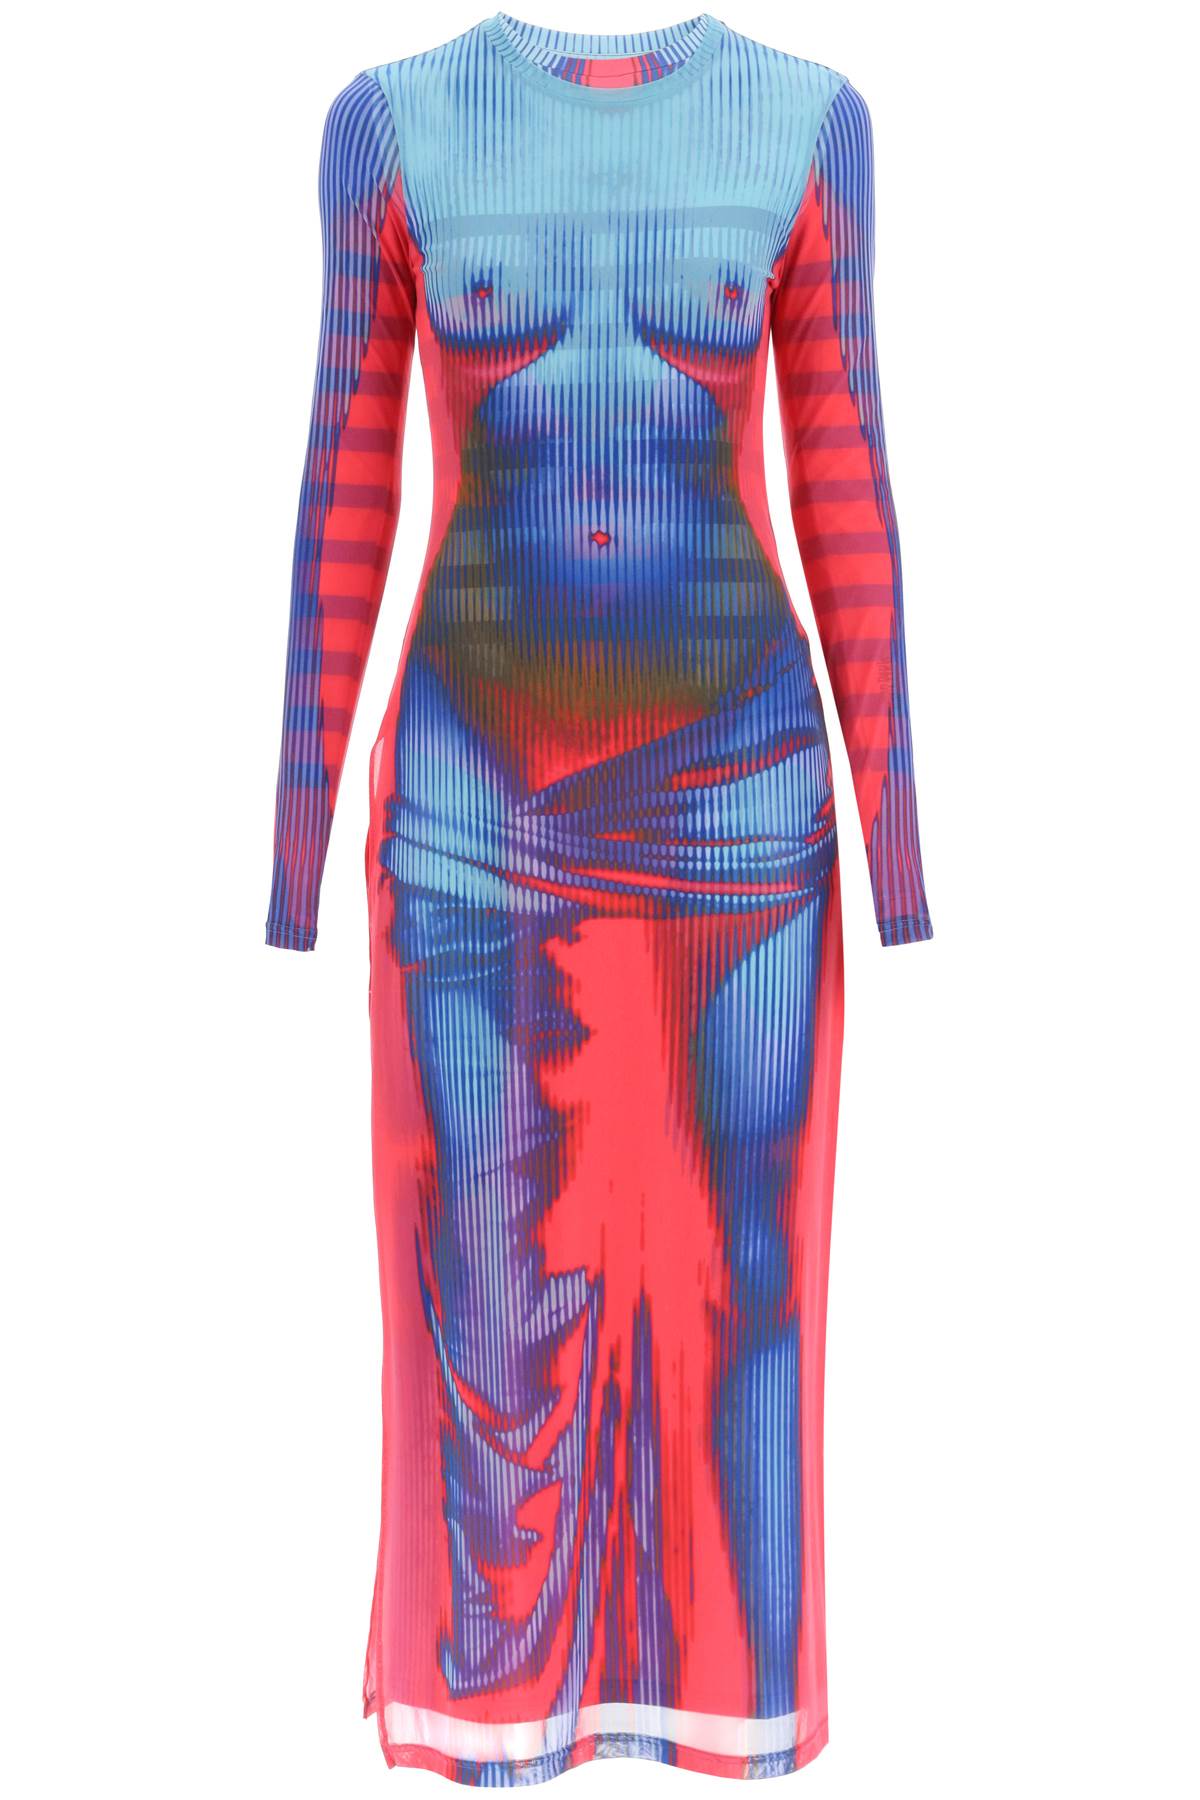 Shop Y/project Jean Paul Gaultier Body Morph Dress In Blue,red,light Blue